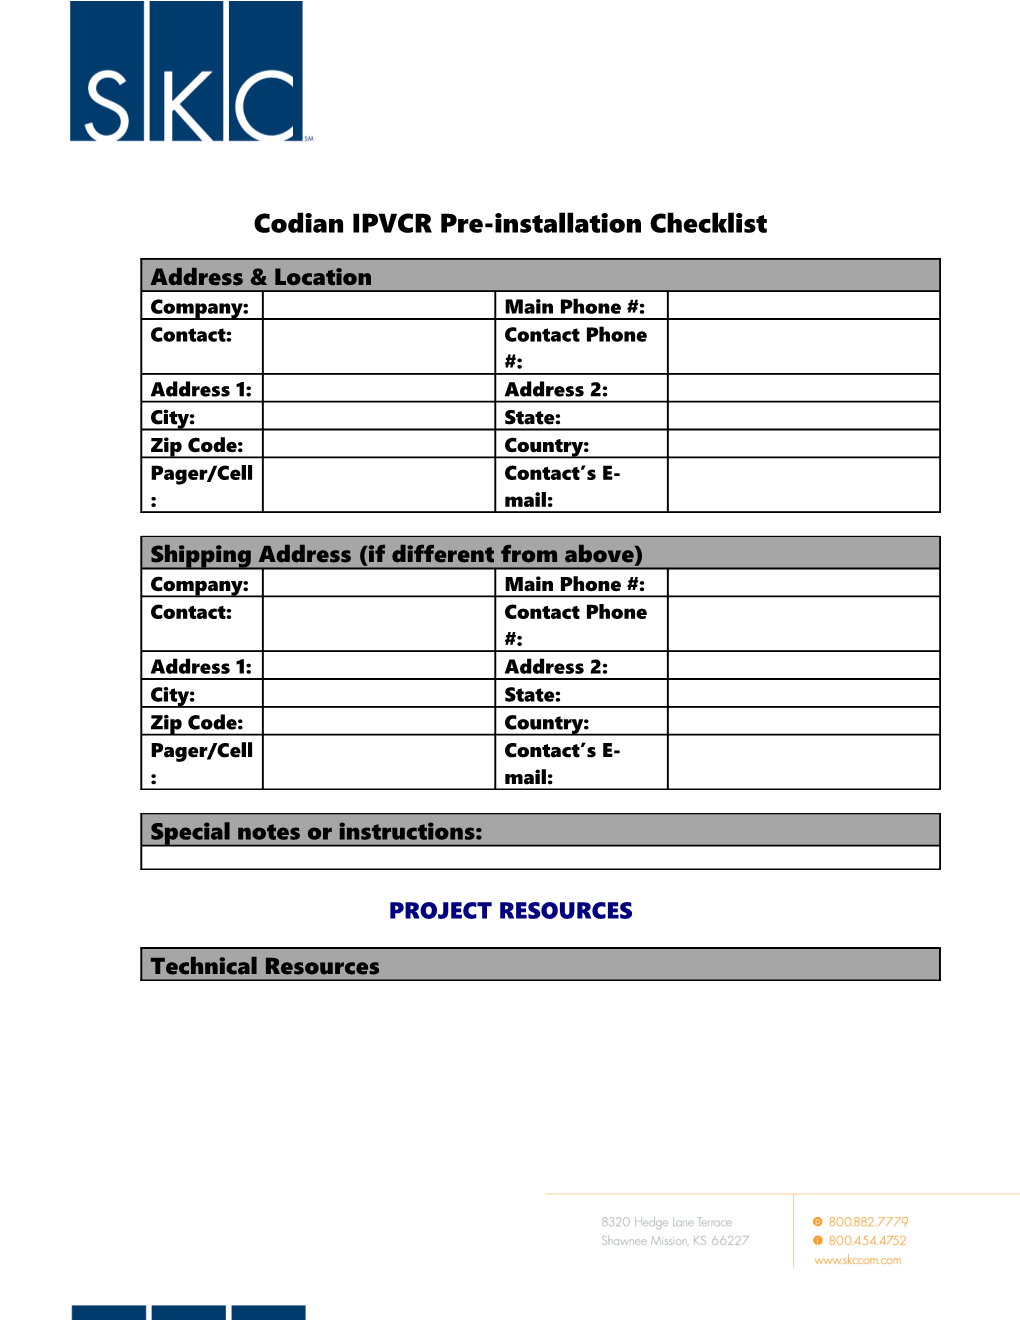 TANDBERG MPS Pre-Installation Checklist